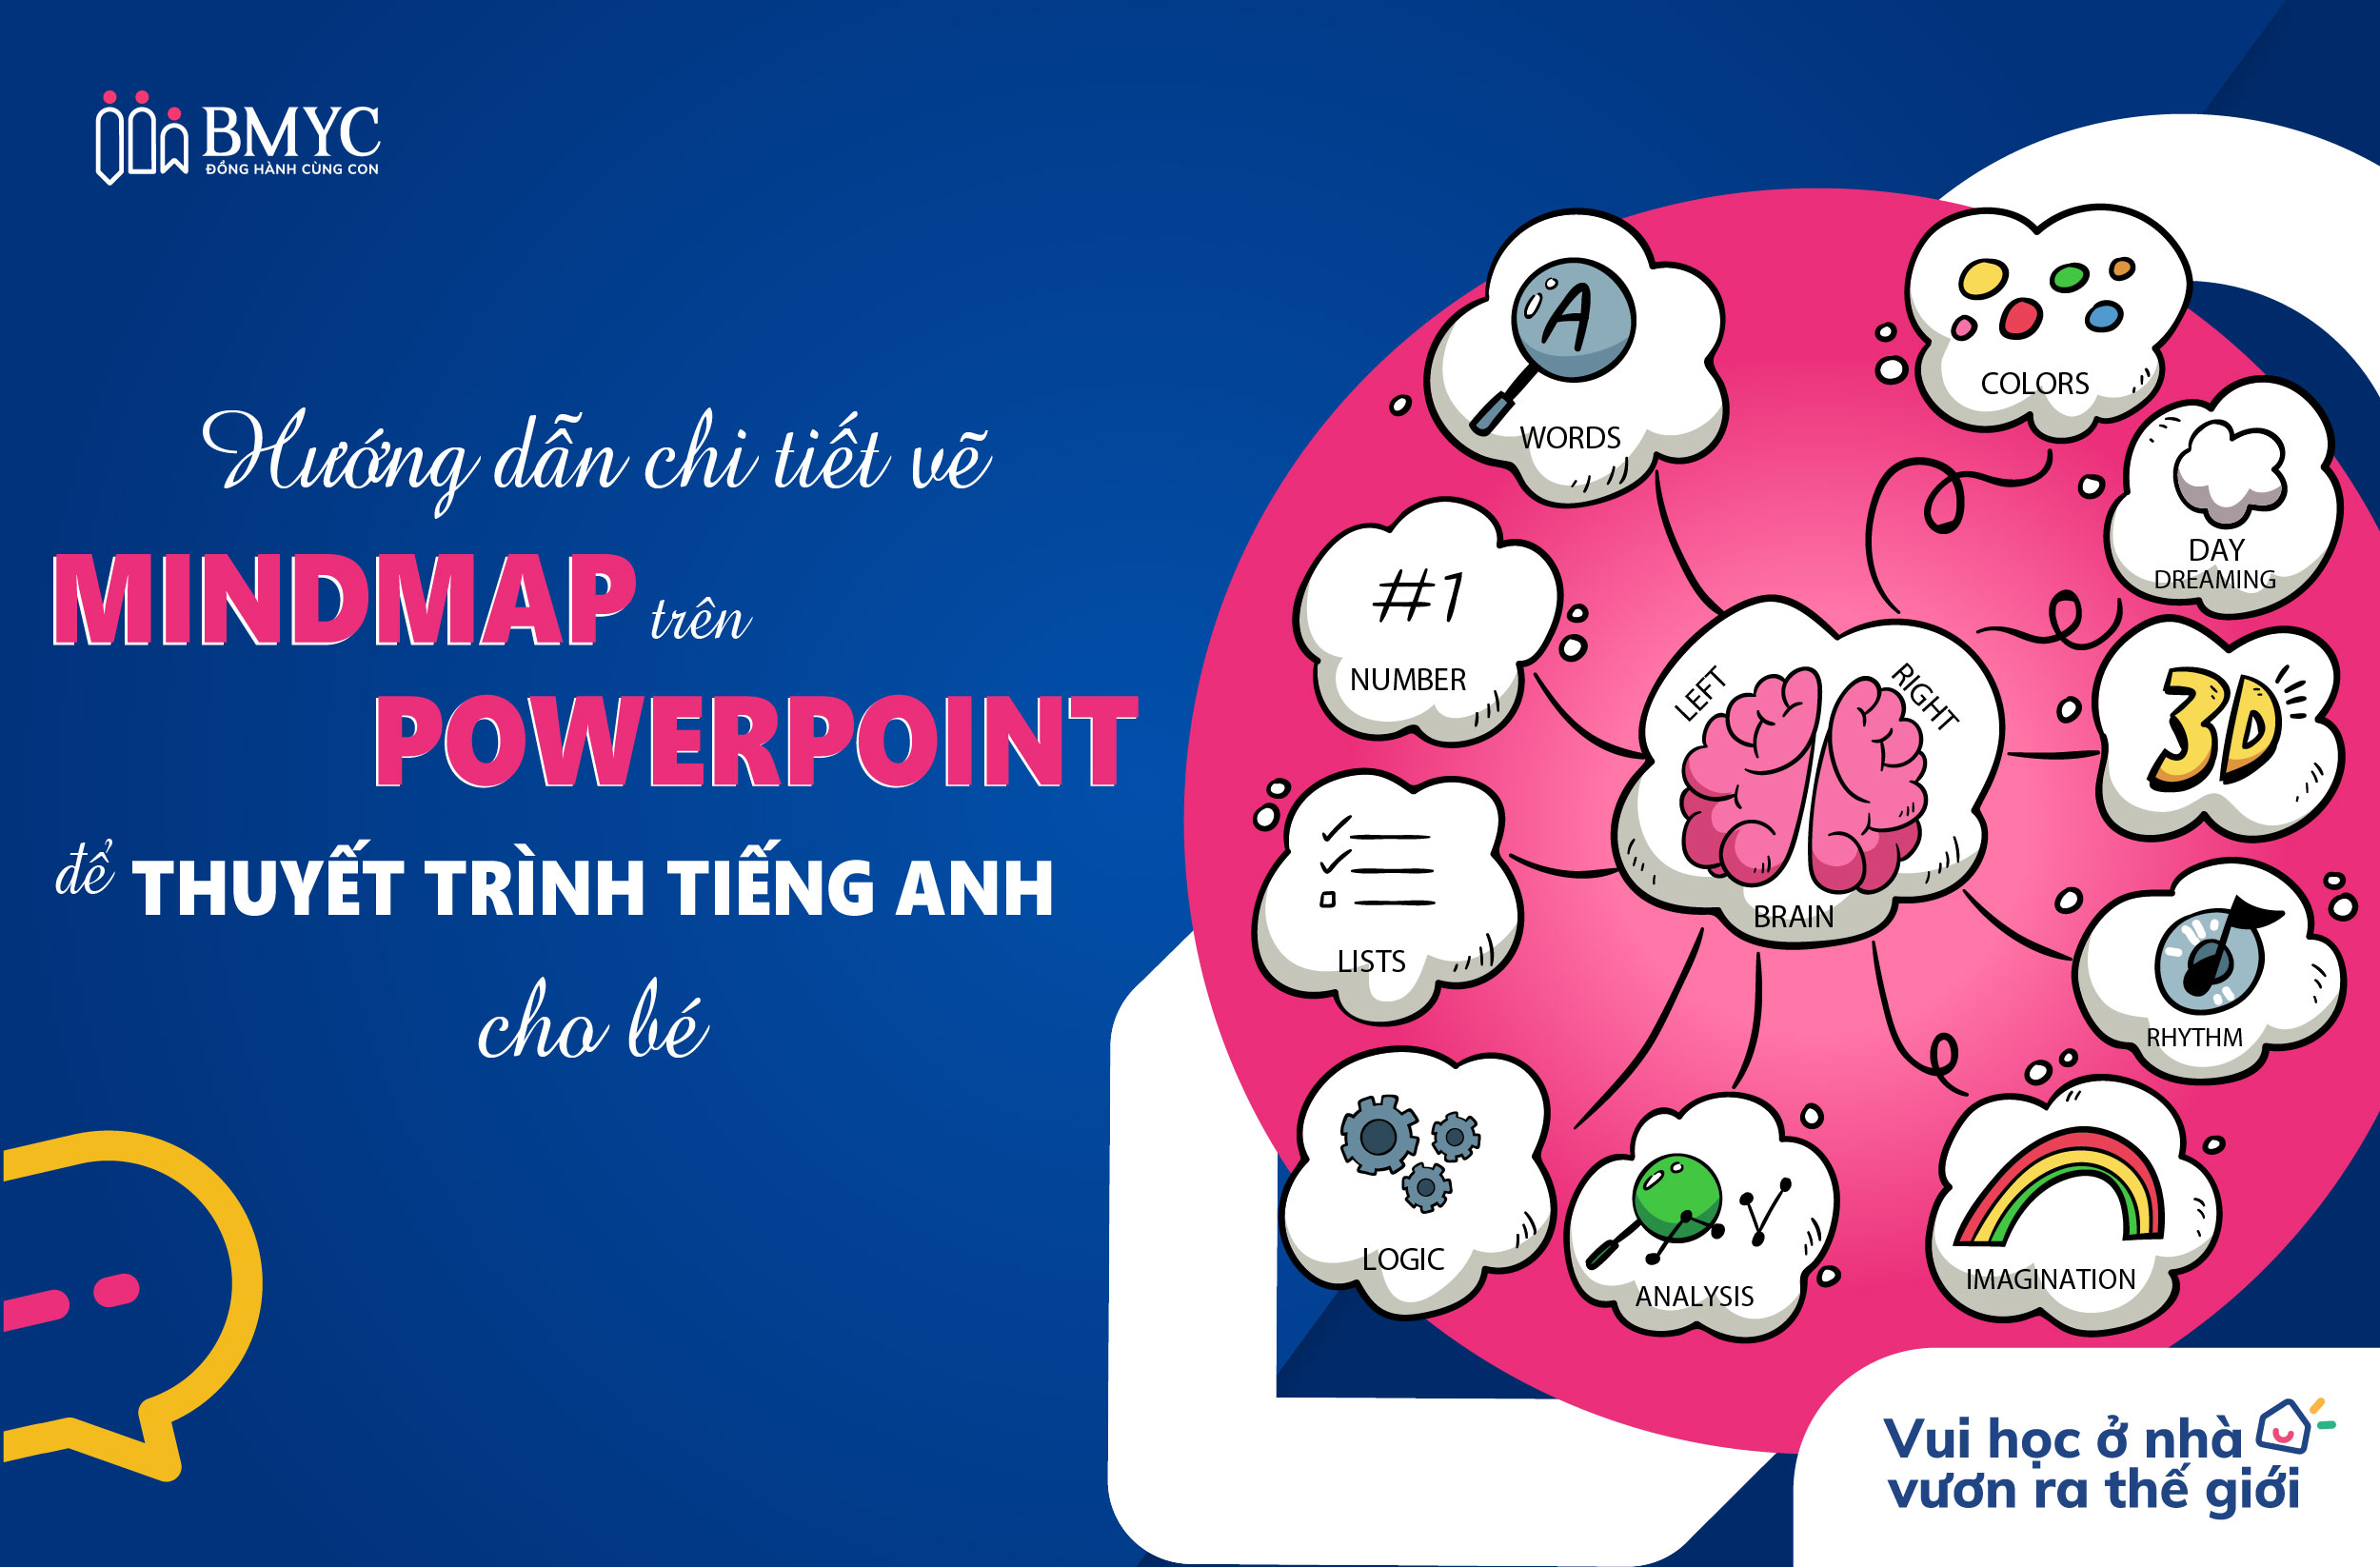 Hướng dẫn chi tiết vẽ mindmap trên powerpoint để thuyết trình tiếng Anh cho bé